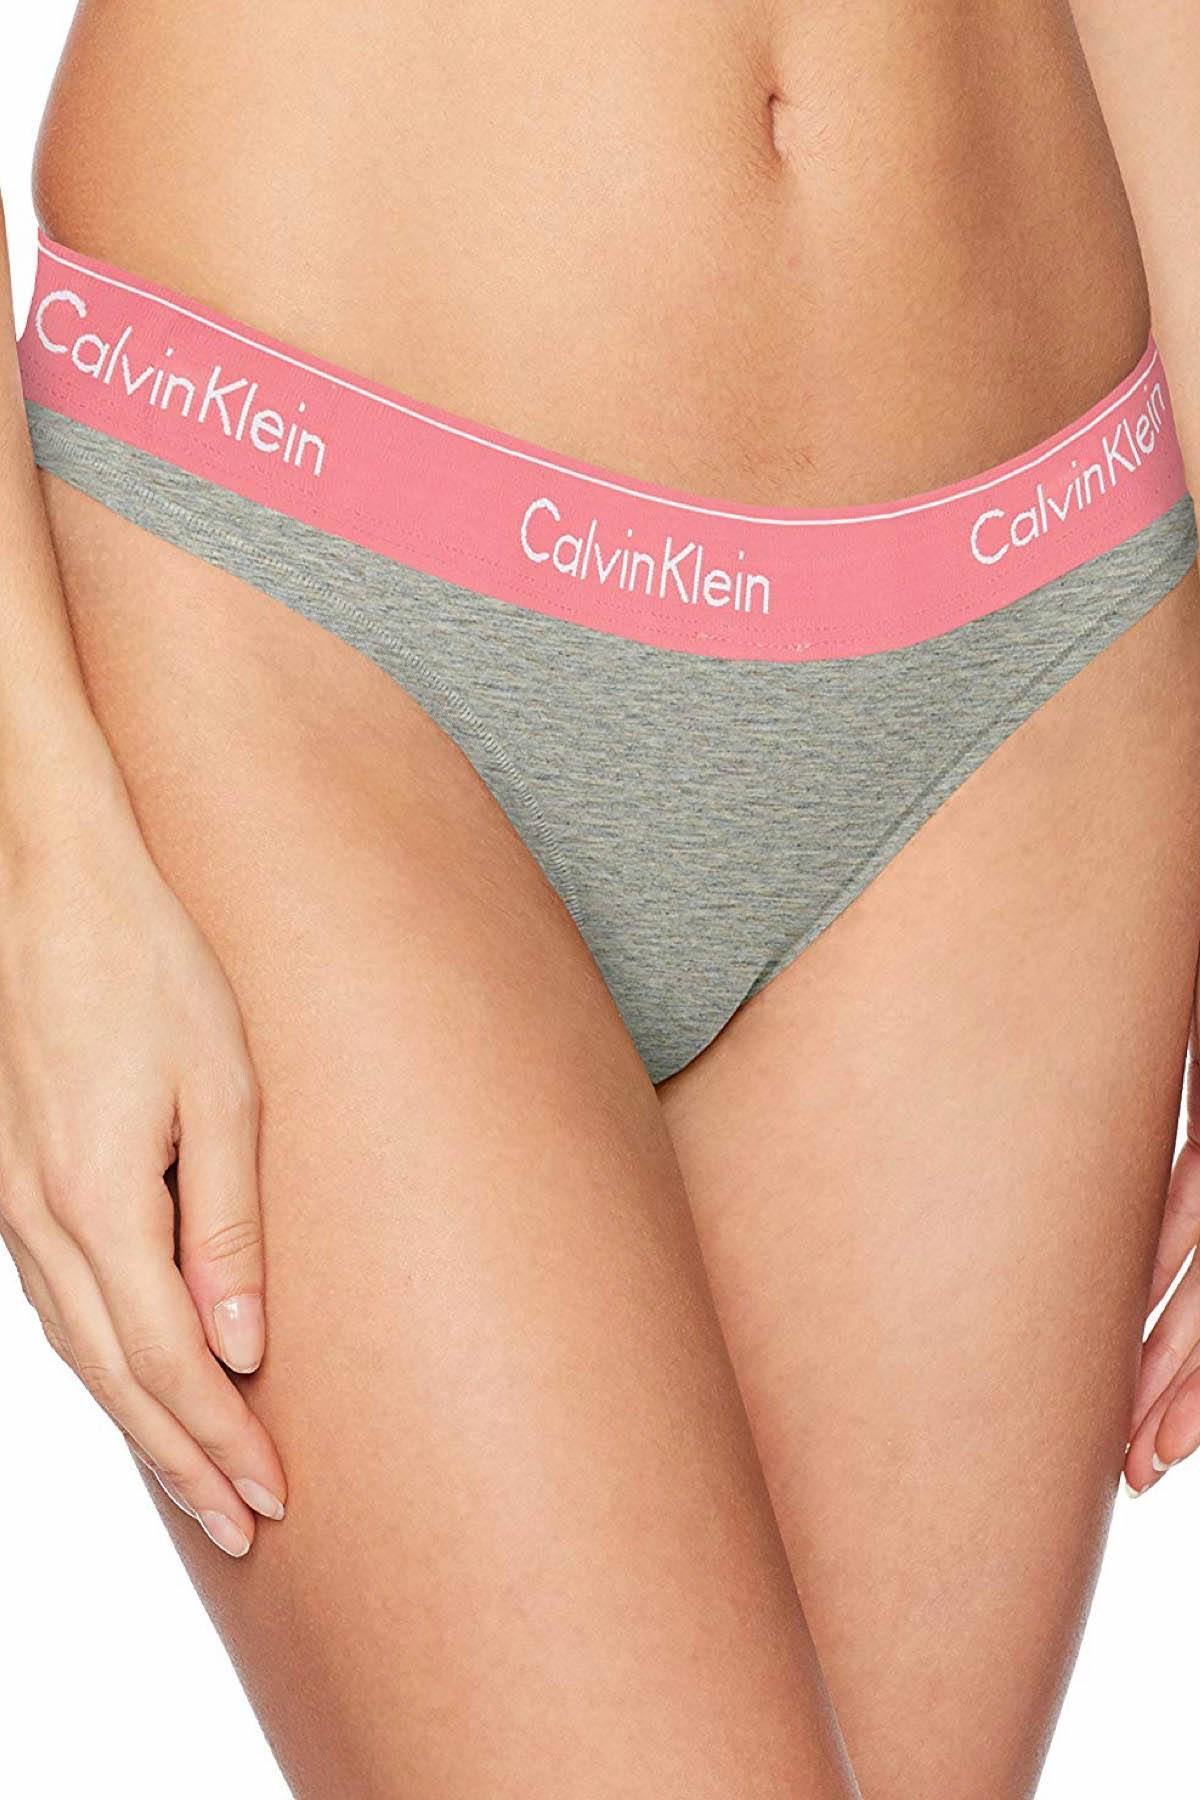 Calvin Klein Heather-Grey/Sensation-Pink Modern Cotton Thong